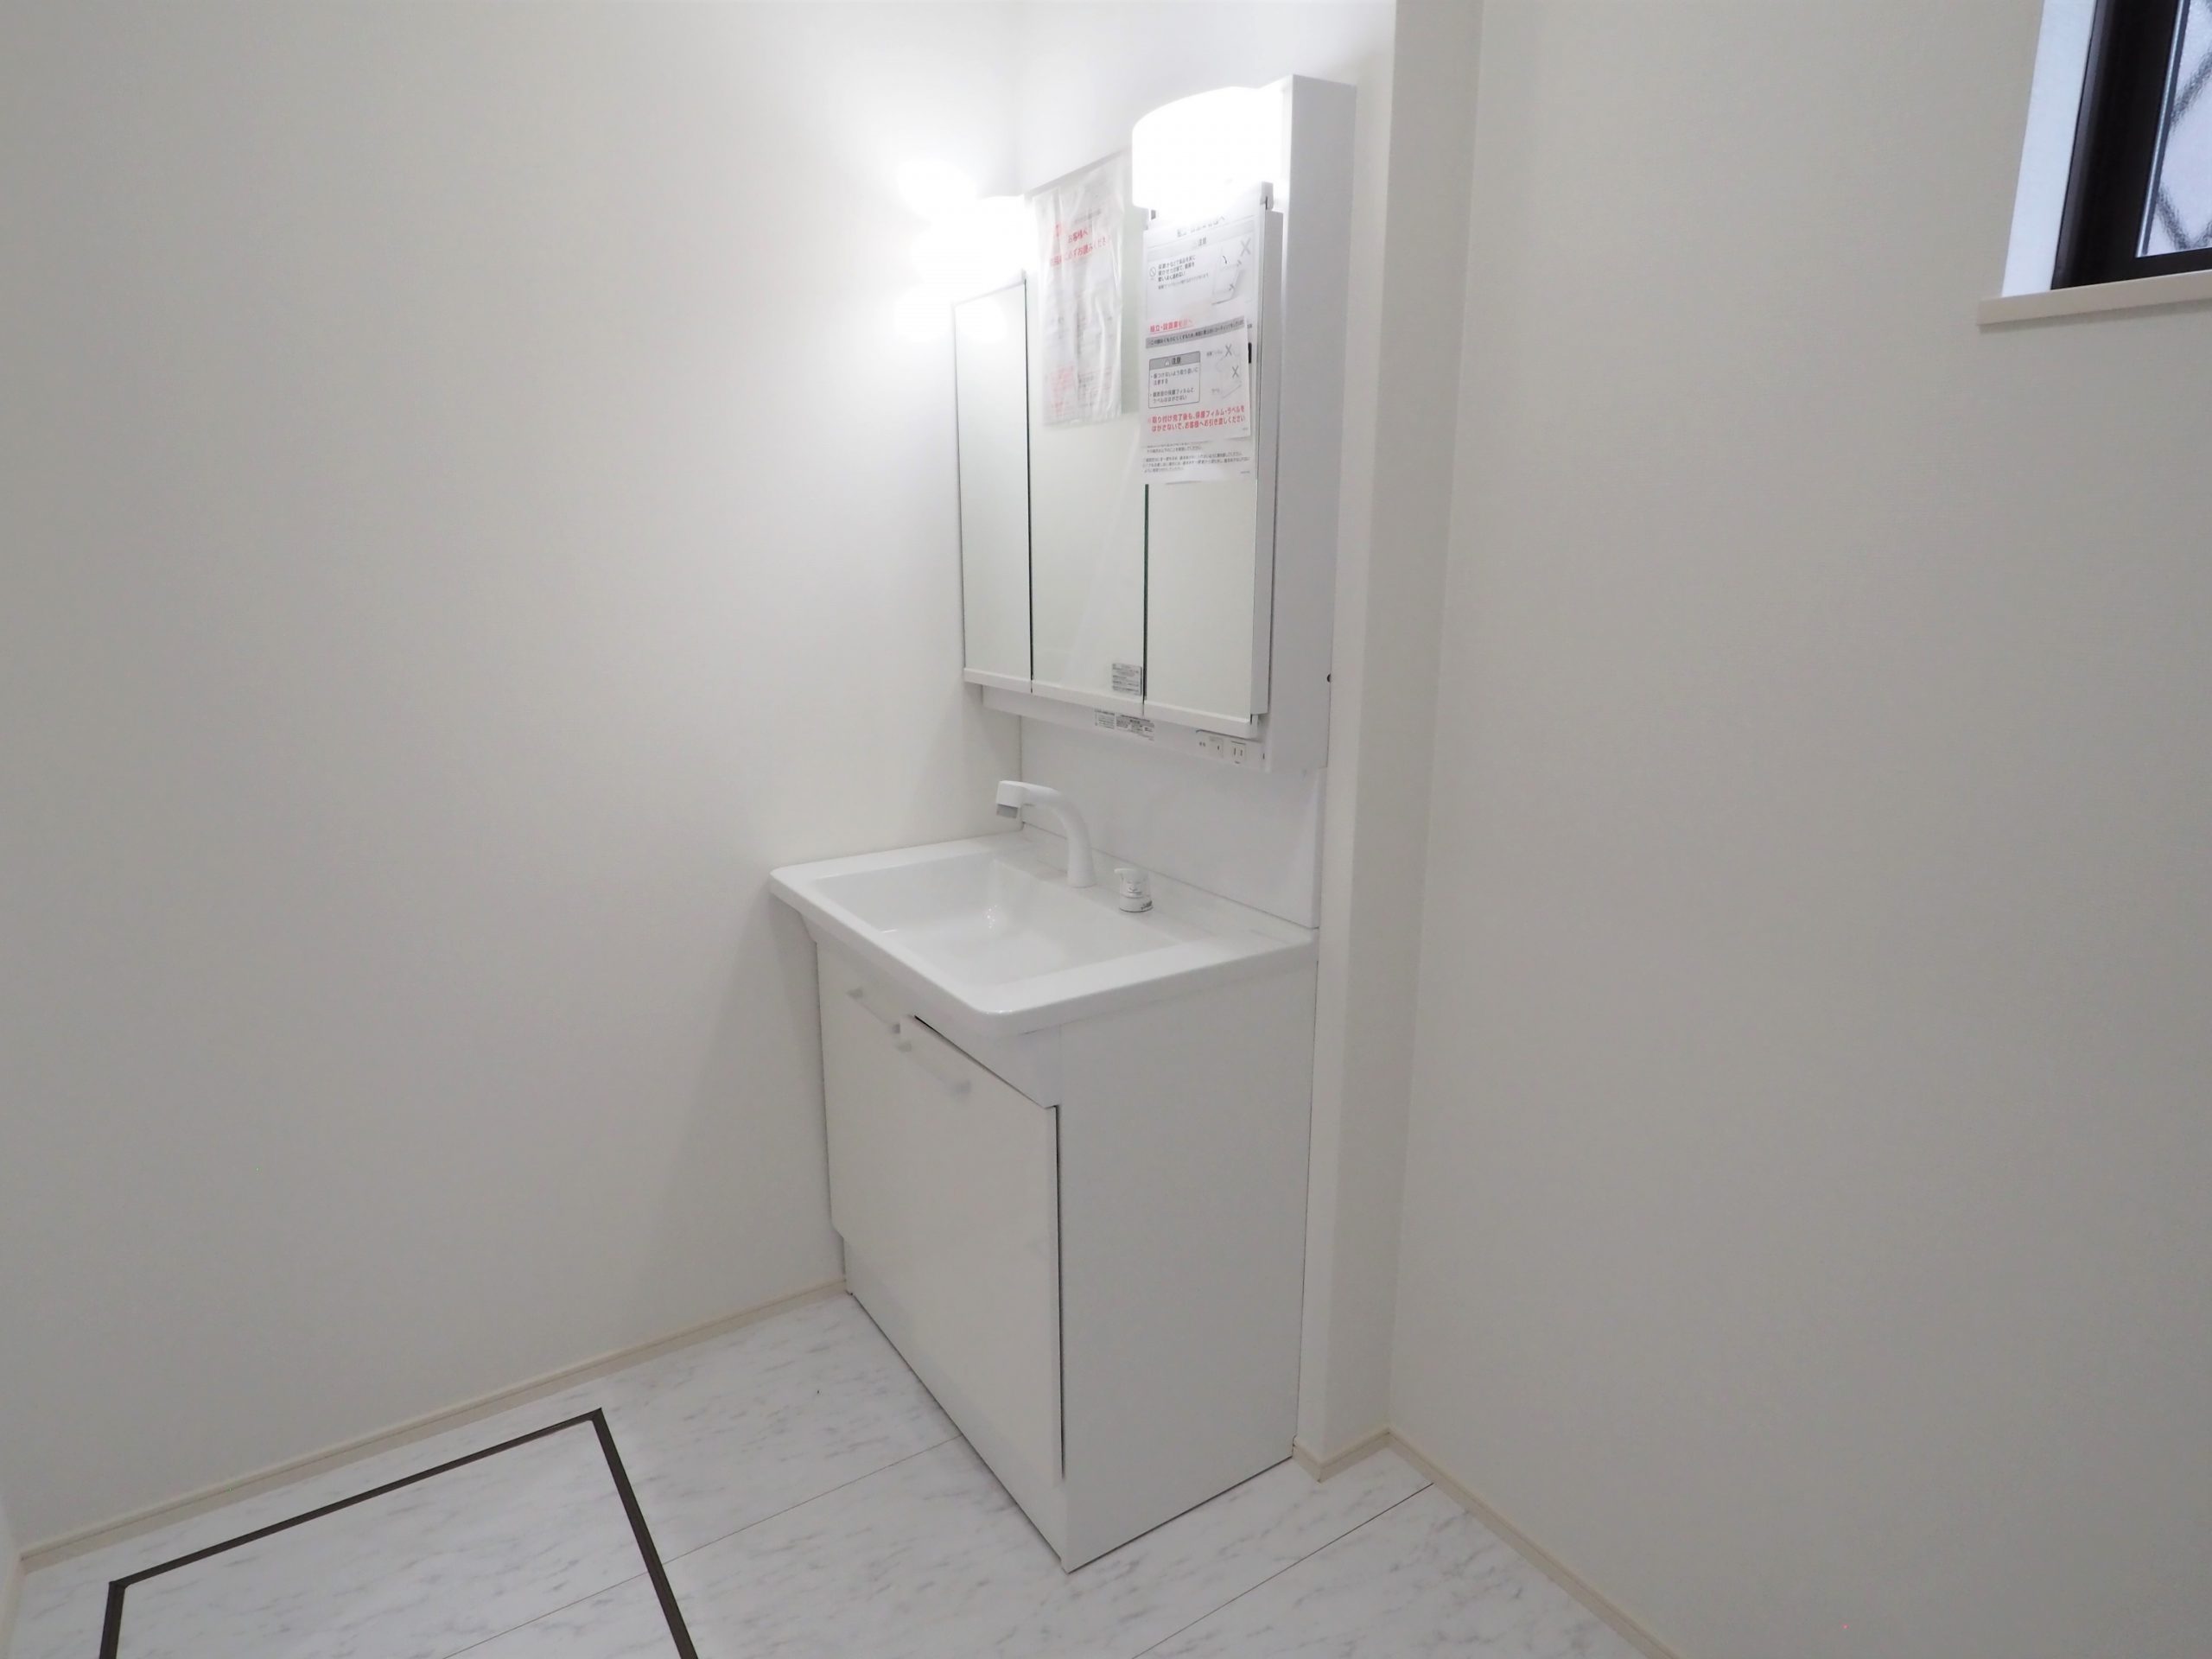 坂戸市にっさい新築店舗カットハウストシの洗面化粧台画像です。白い洗面化粧台が清潔感を感じます。